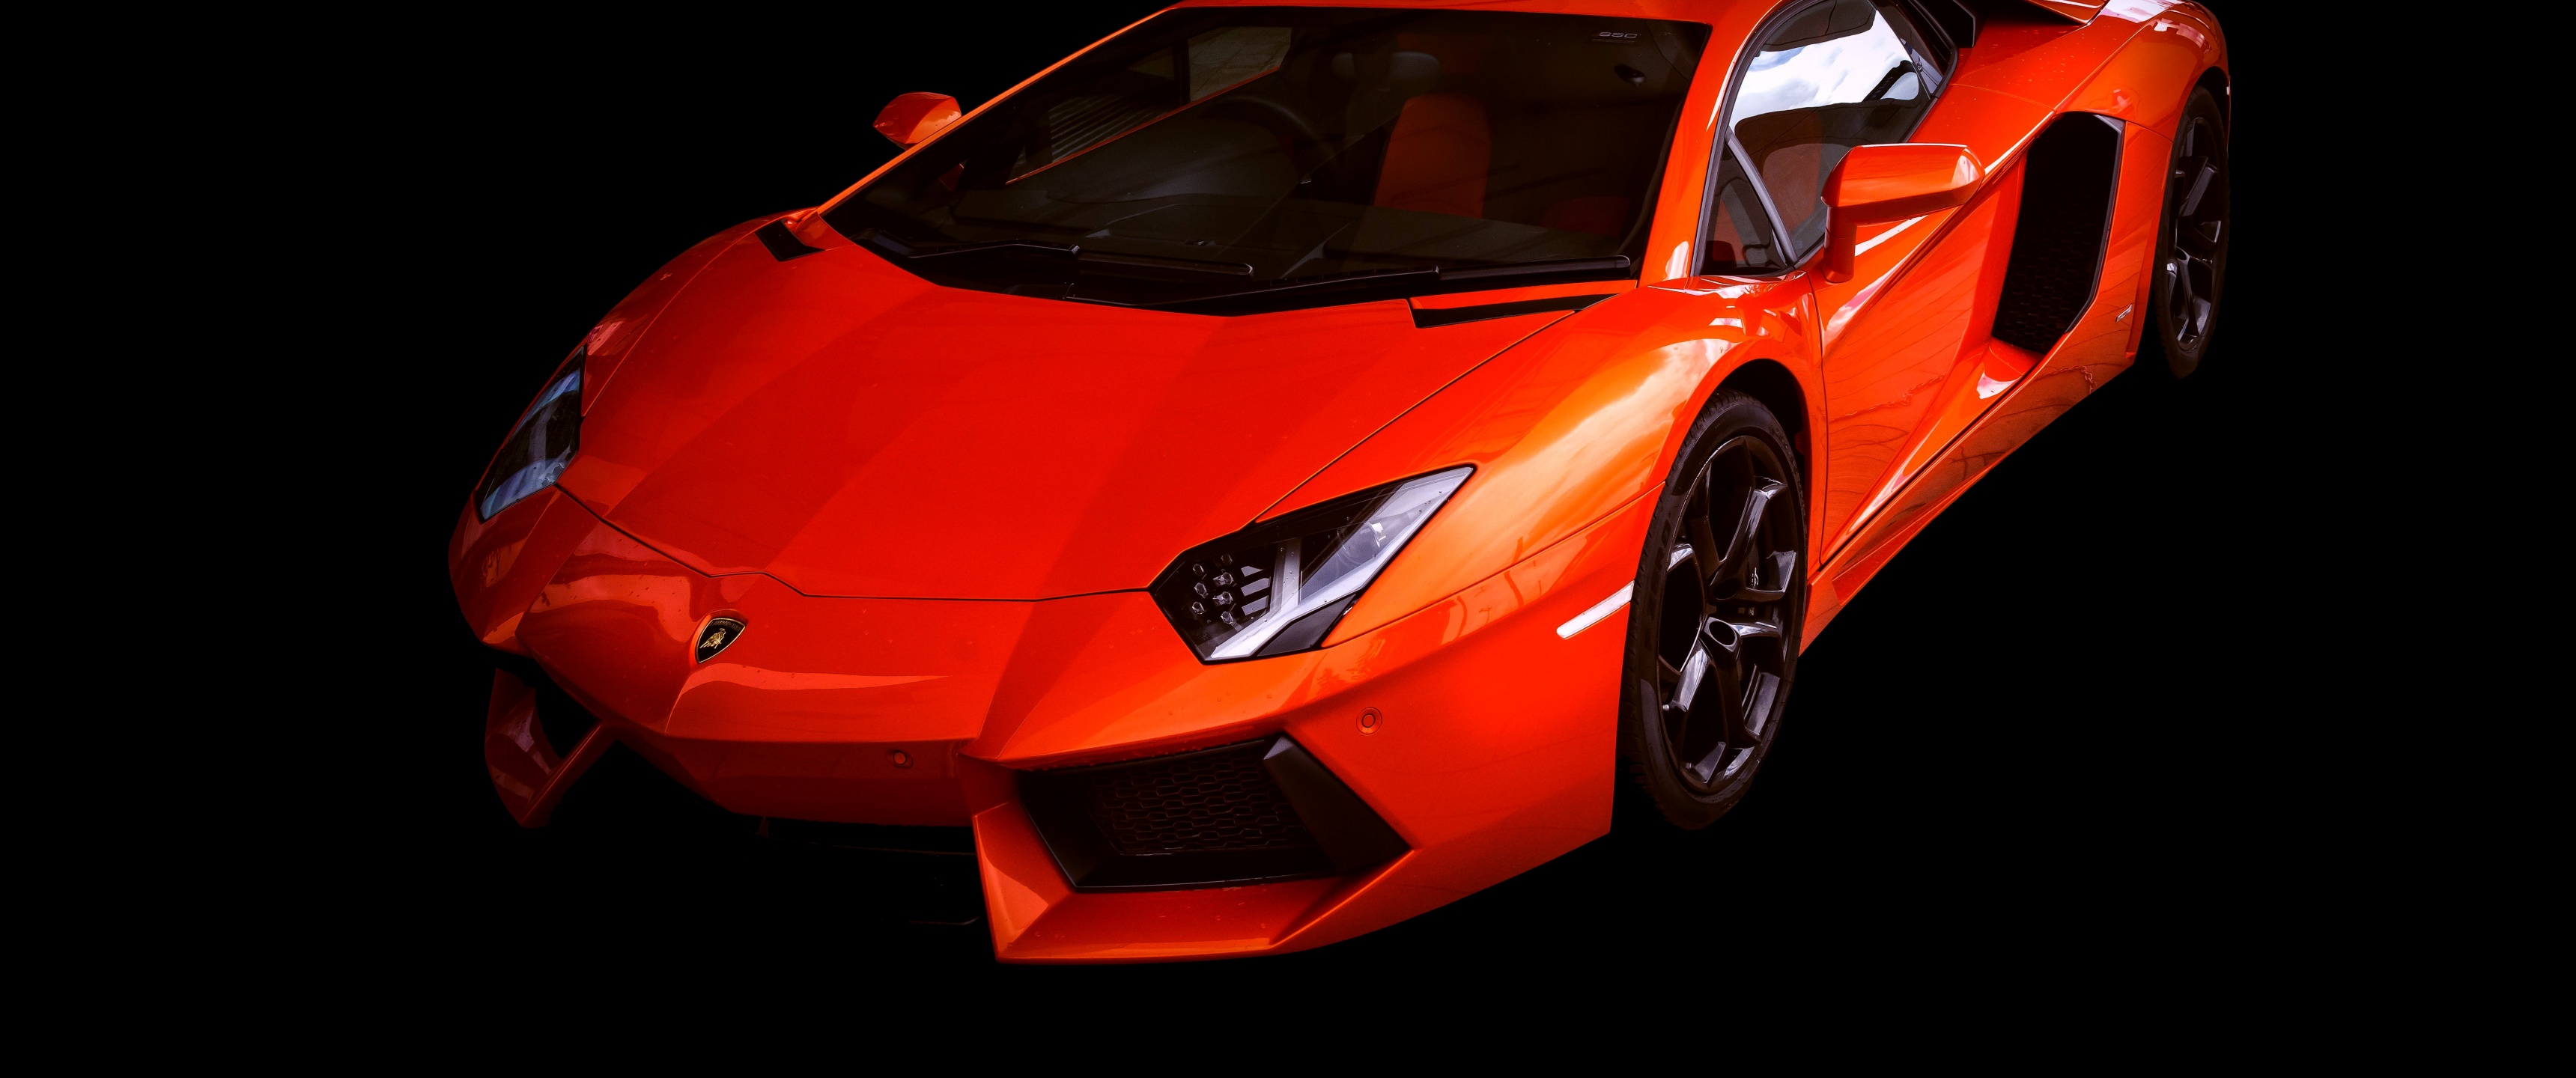 Lamborghini Aventador là một siêu phẩm của thế giới xe hơi. Những bức ảnh liên quan sẽ đưa bạn đến với thế giới của những chiếc xe tuyệt đẹp, đầy mạnh mẽ và năng động. Hãy chuẩn bị cho những cú đua tốc độ và những khoảnh khắc đáng nhớ.